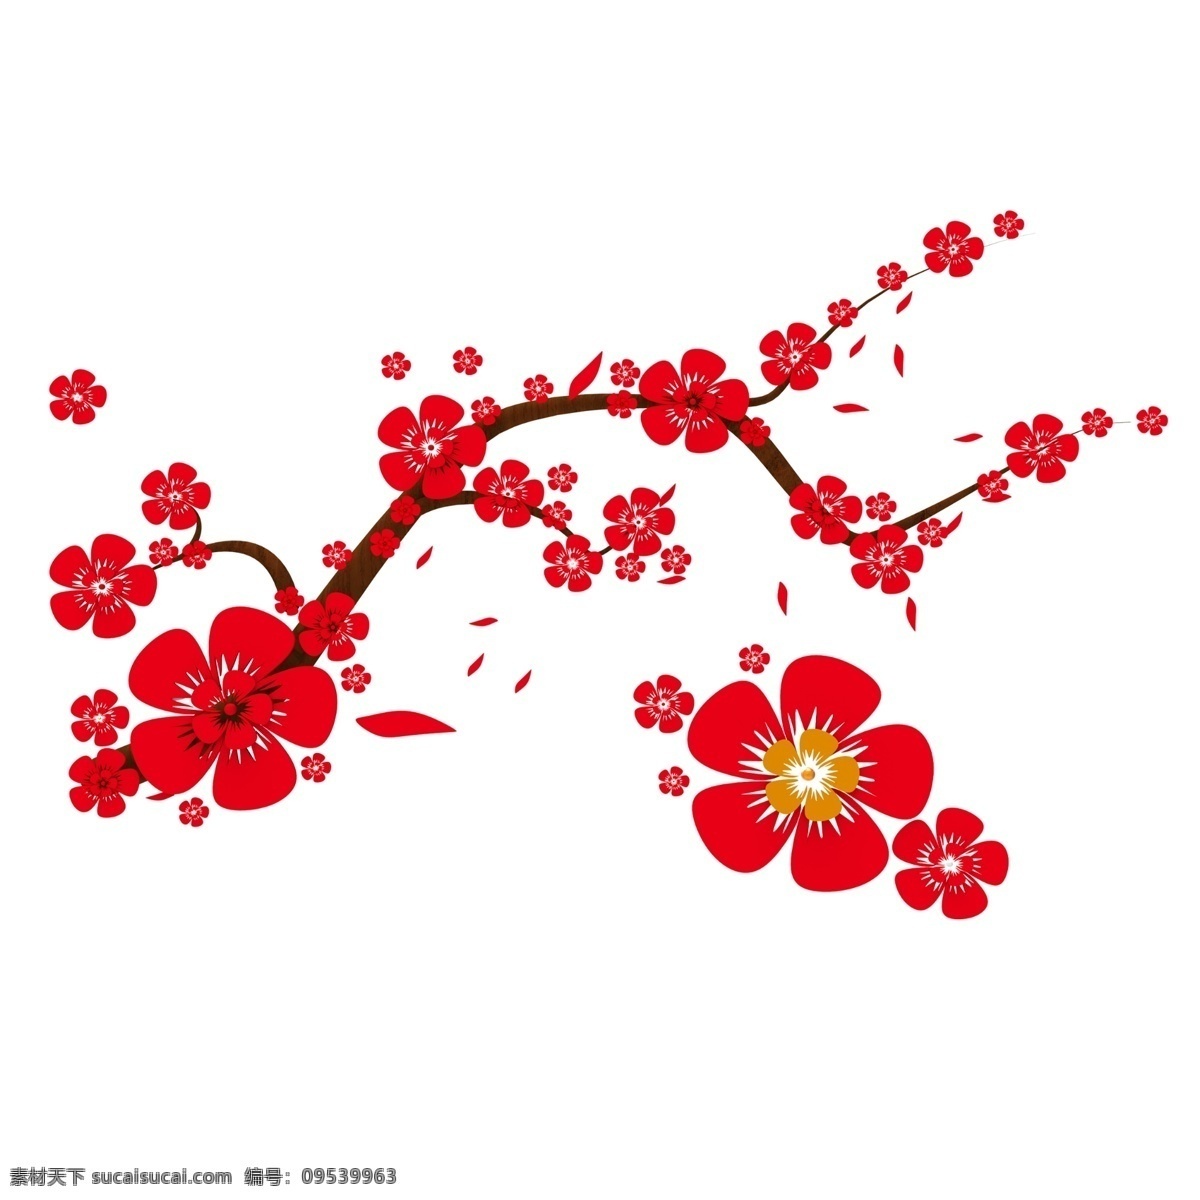 红色 剪纸 梅花 花朵 2020 剪纸春节 鼠年 干枝梅 传统 中国风 中国元素 文化艺术 创意 共享素材